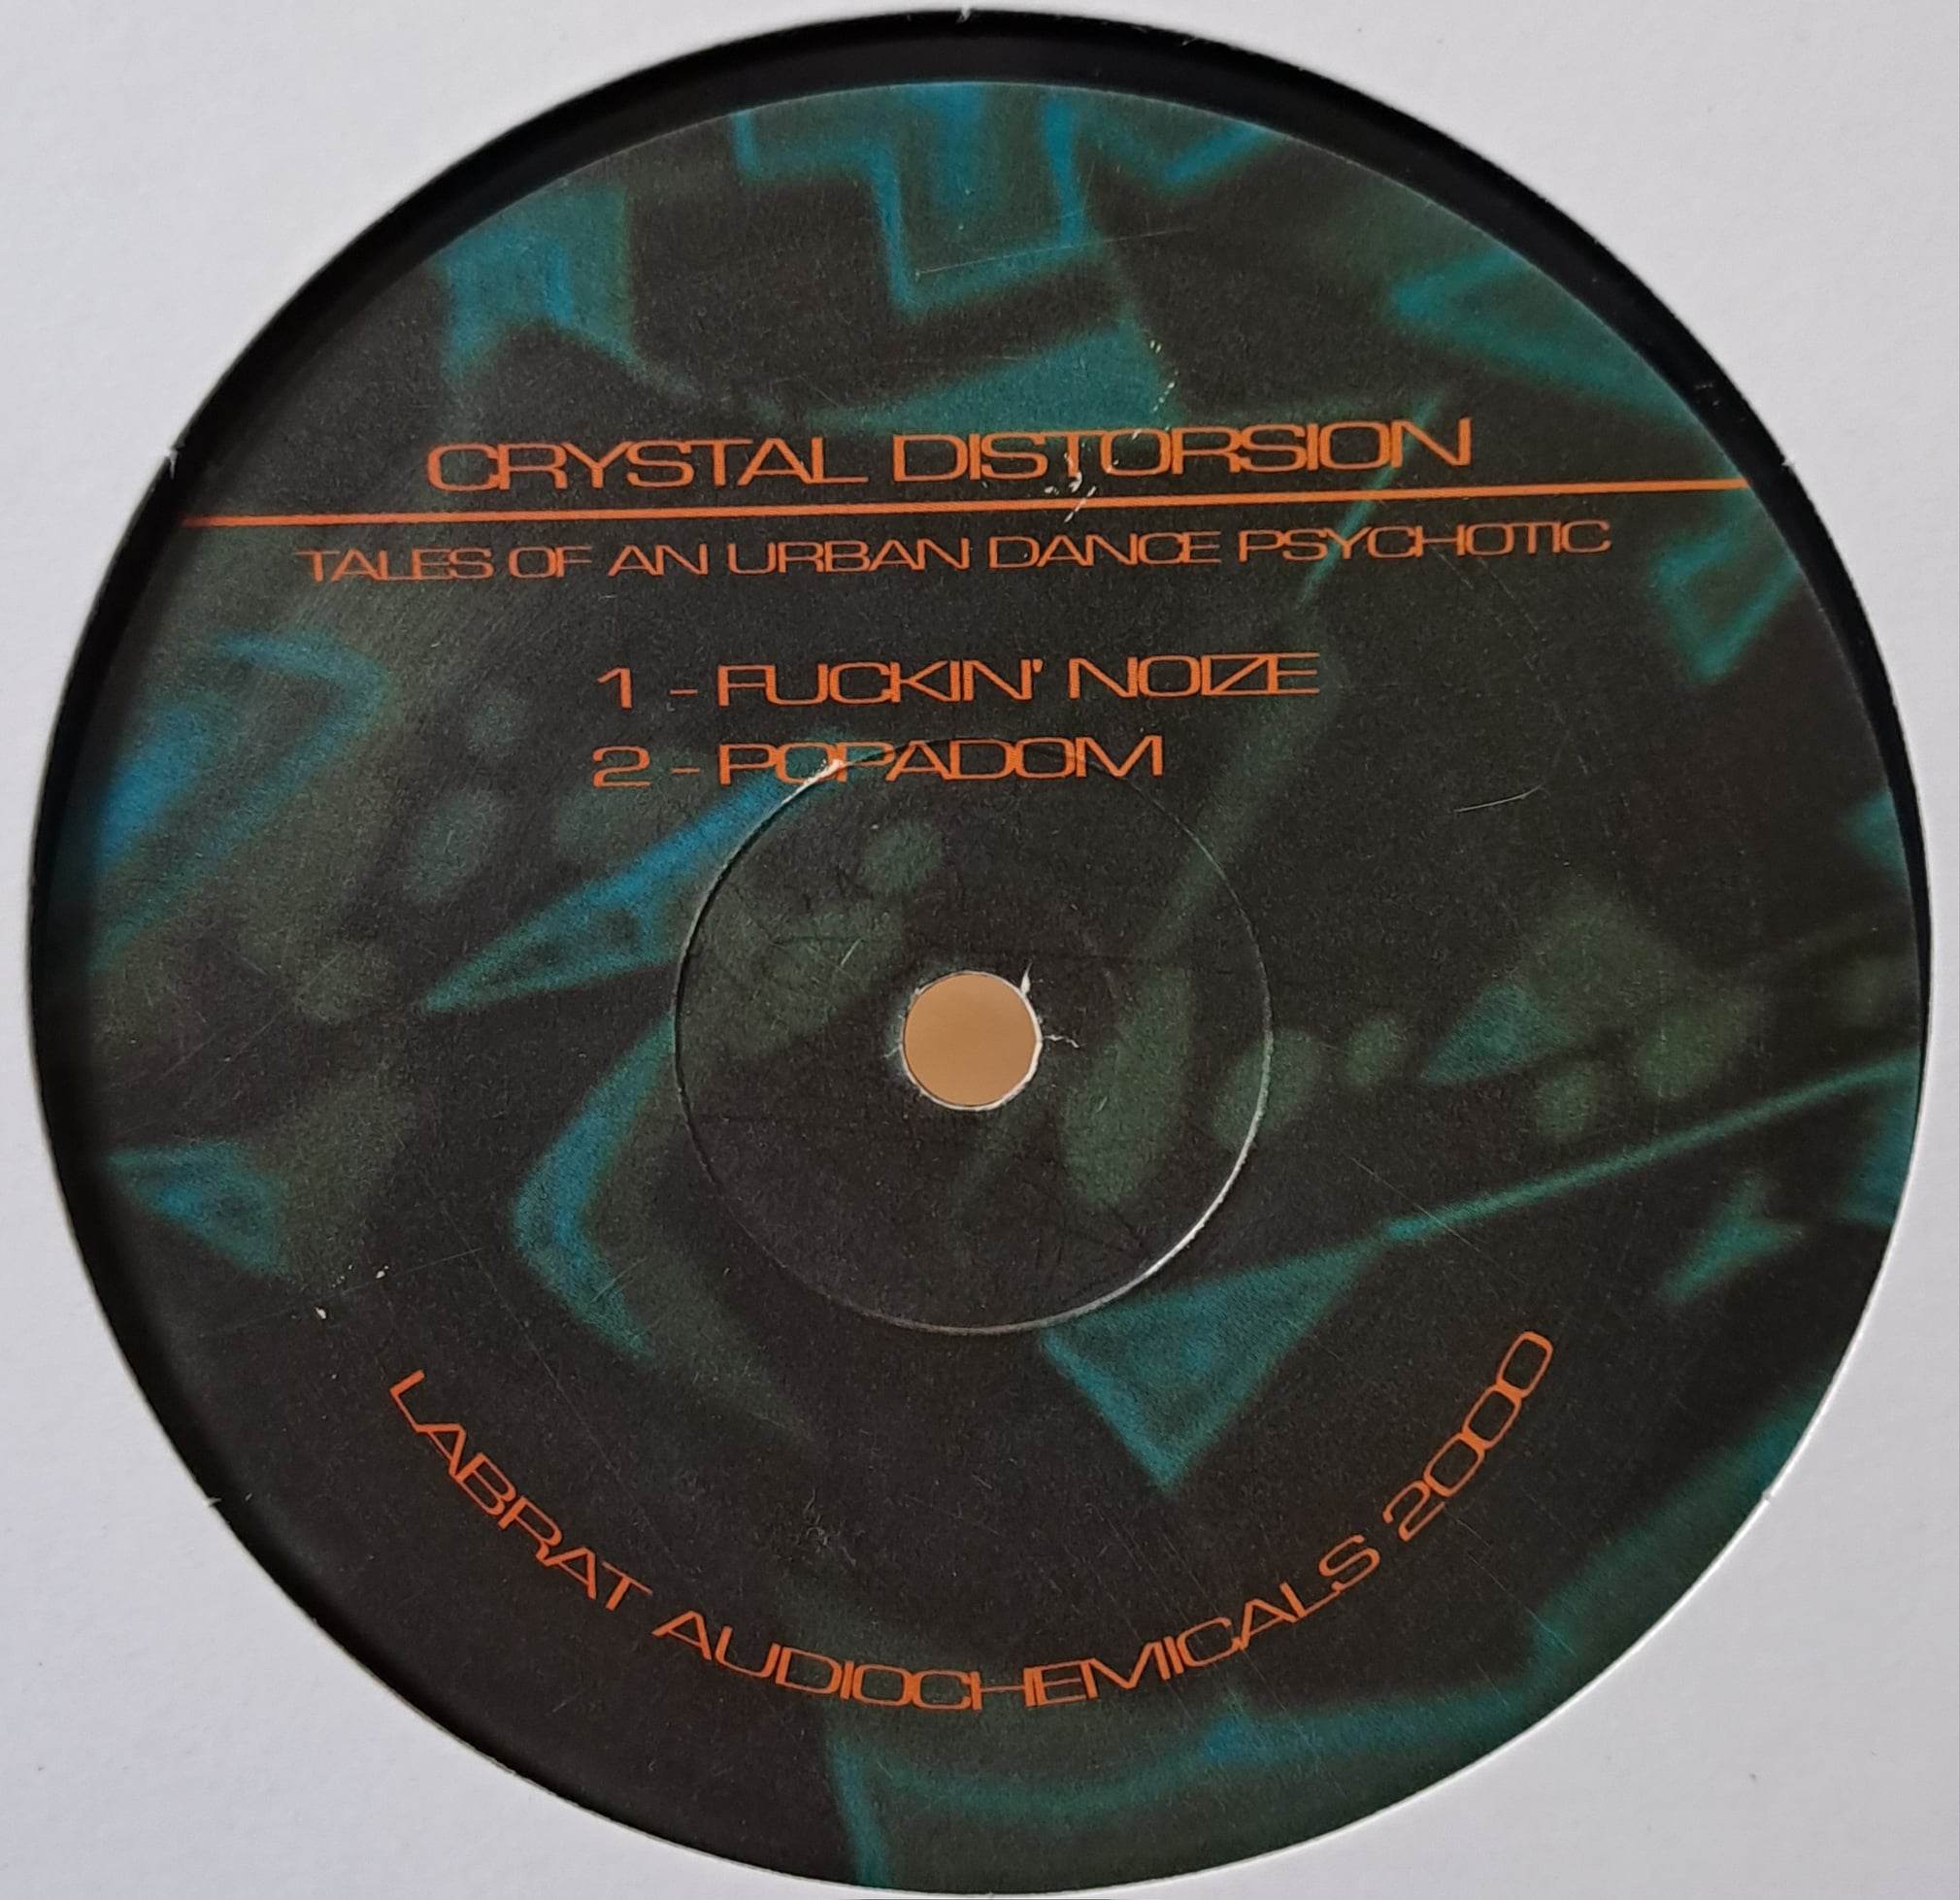 Hokus Pokus 2000 - vinyle freetekno